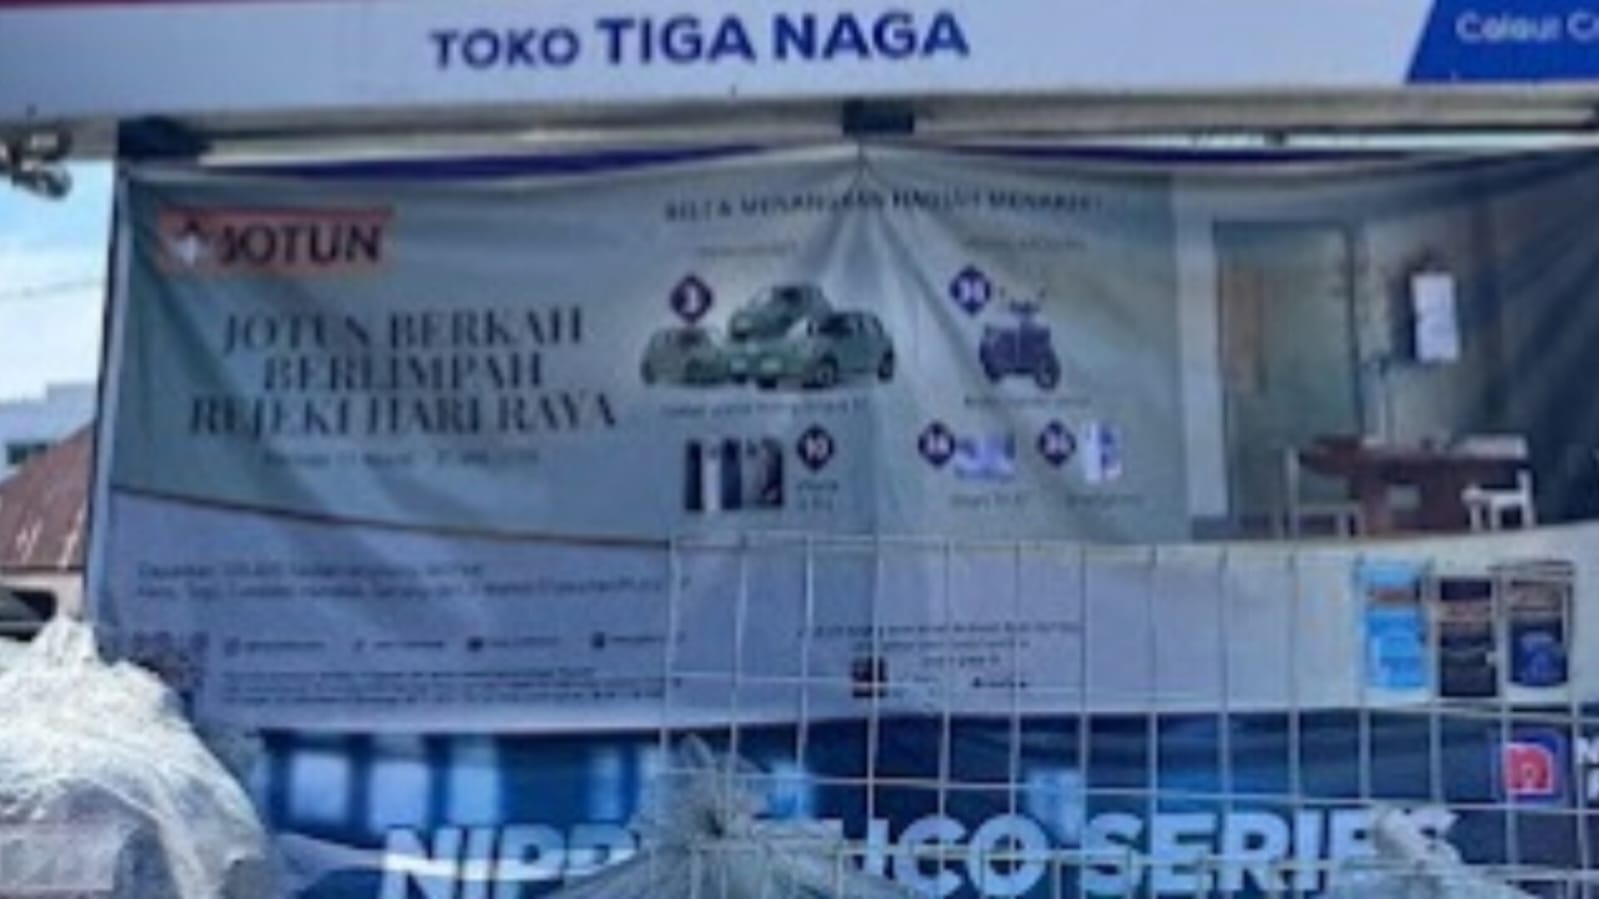 Info Lowongan Kerja, Toko Besi Tiga Naga Lubuk Linggau Cari Pegawai Baru, Posisi dan Syarat Cek di Sini 